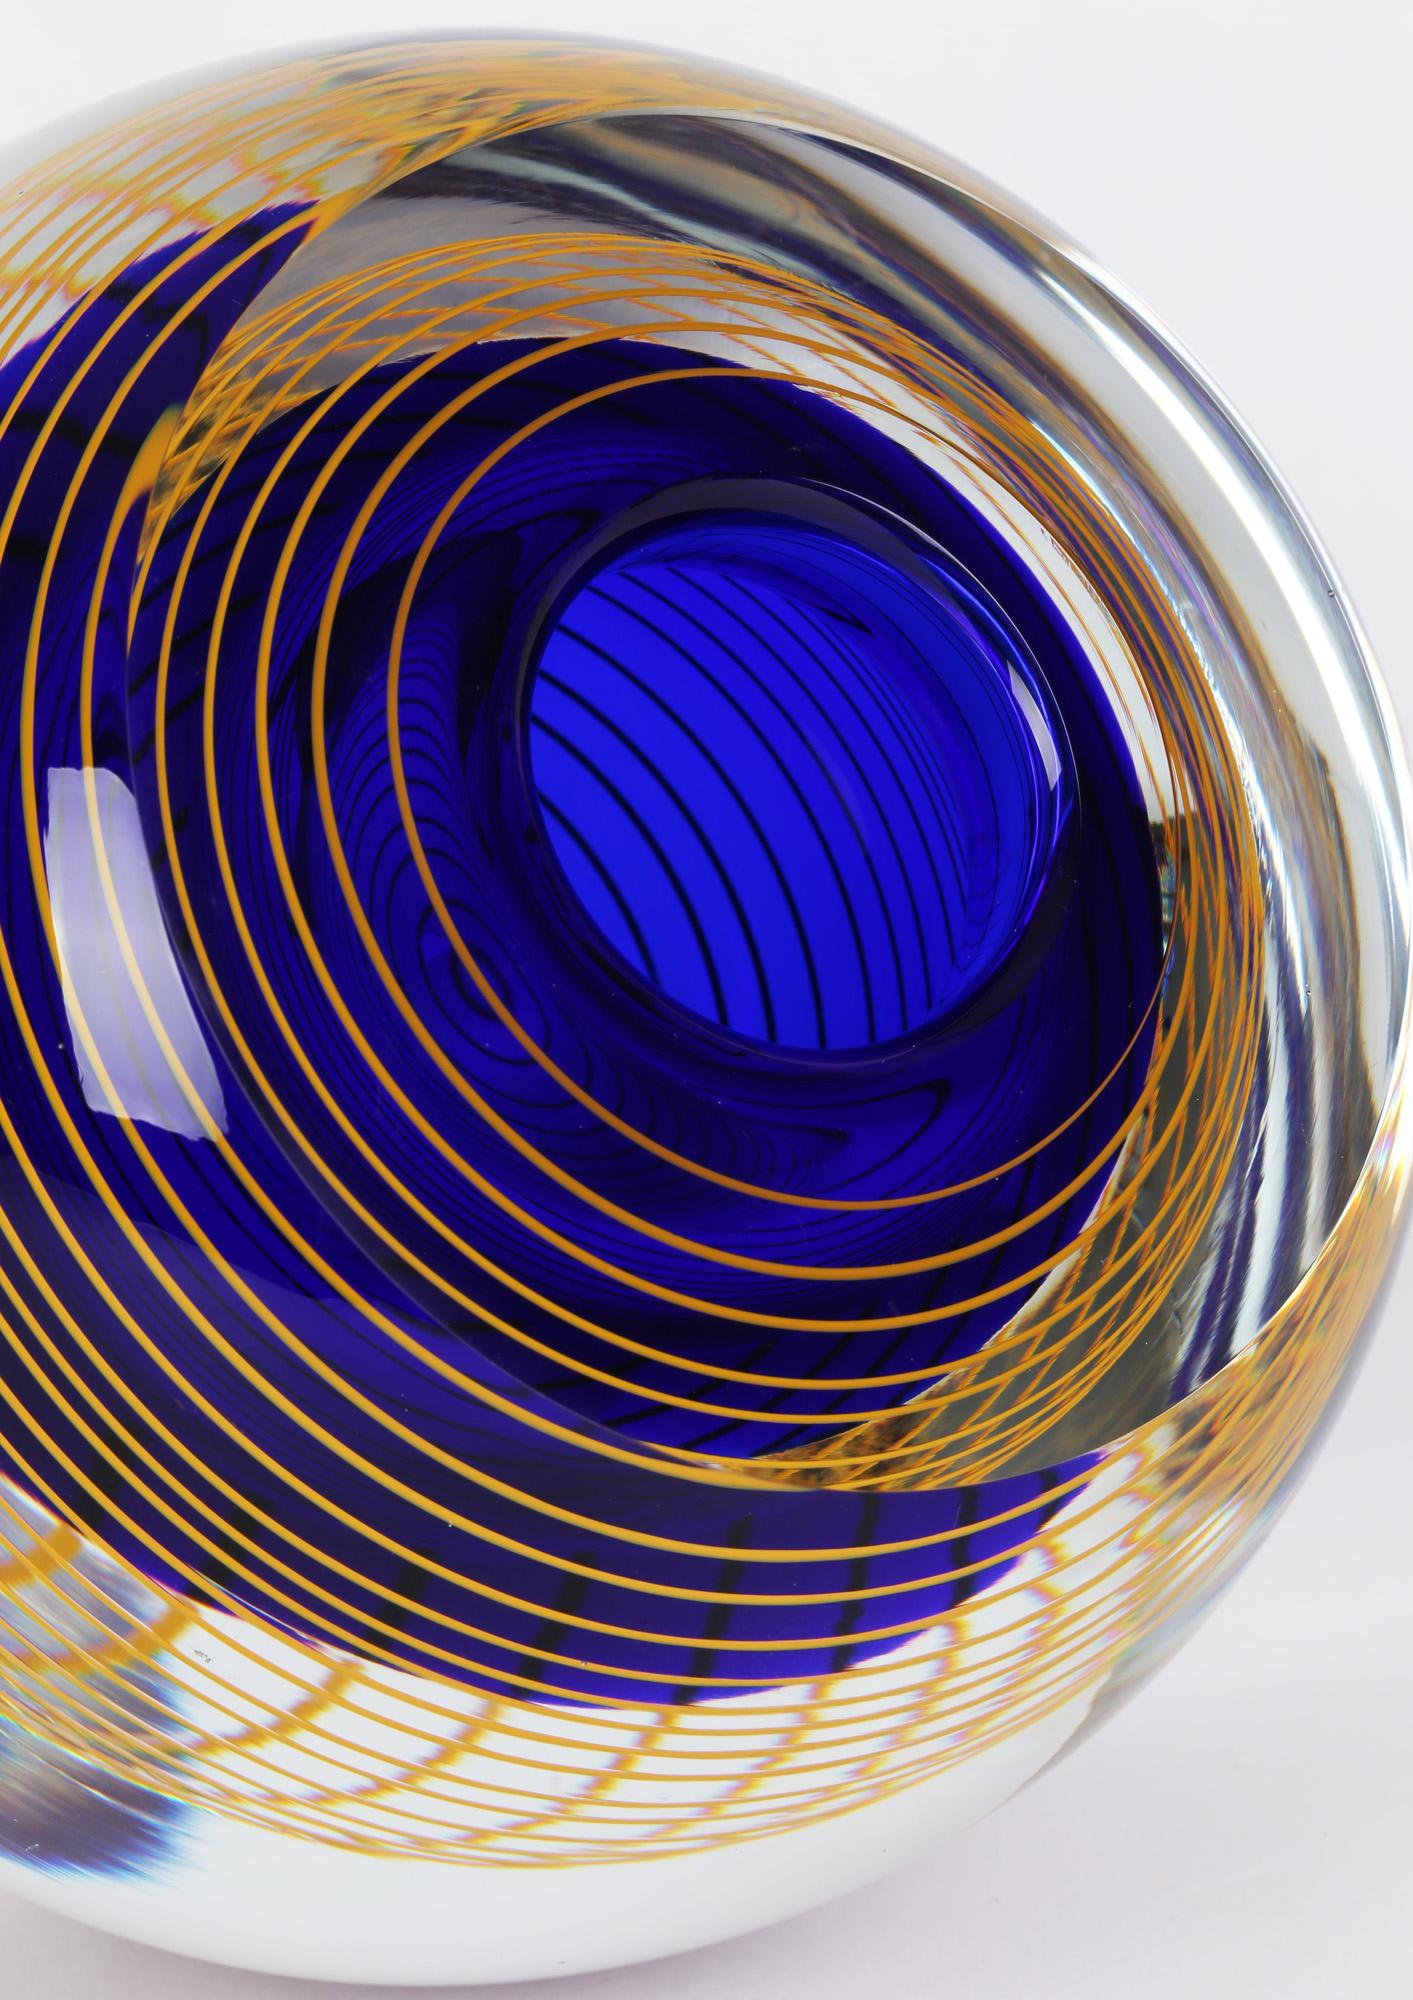 Eine atemberaubende tschechische Kunstglasvase mit einem spiralförmigen Design von Stanislav Libensky (1921-2002) für die Glashütte Beranek Skrdlovice aus der Zeit um 1977. Diese stark handgefertigte Vase hat eine abgerundete, bauchige Form mit